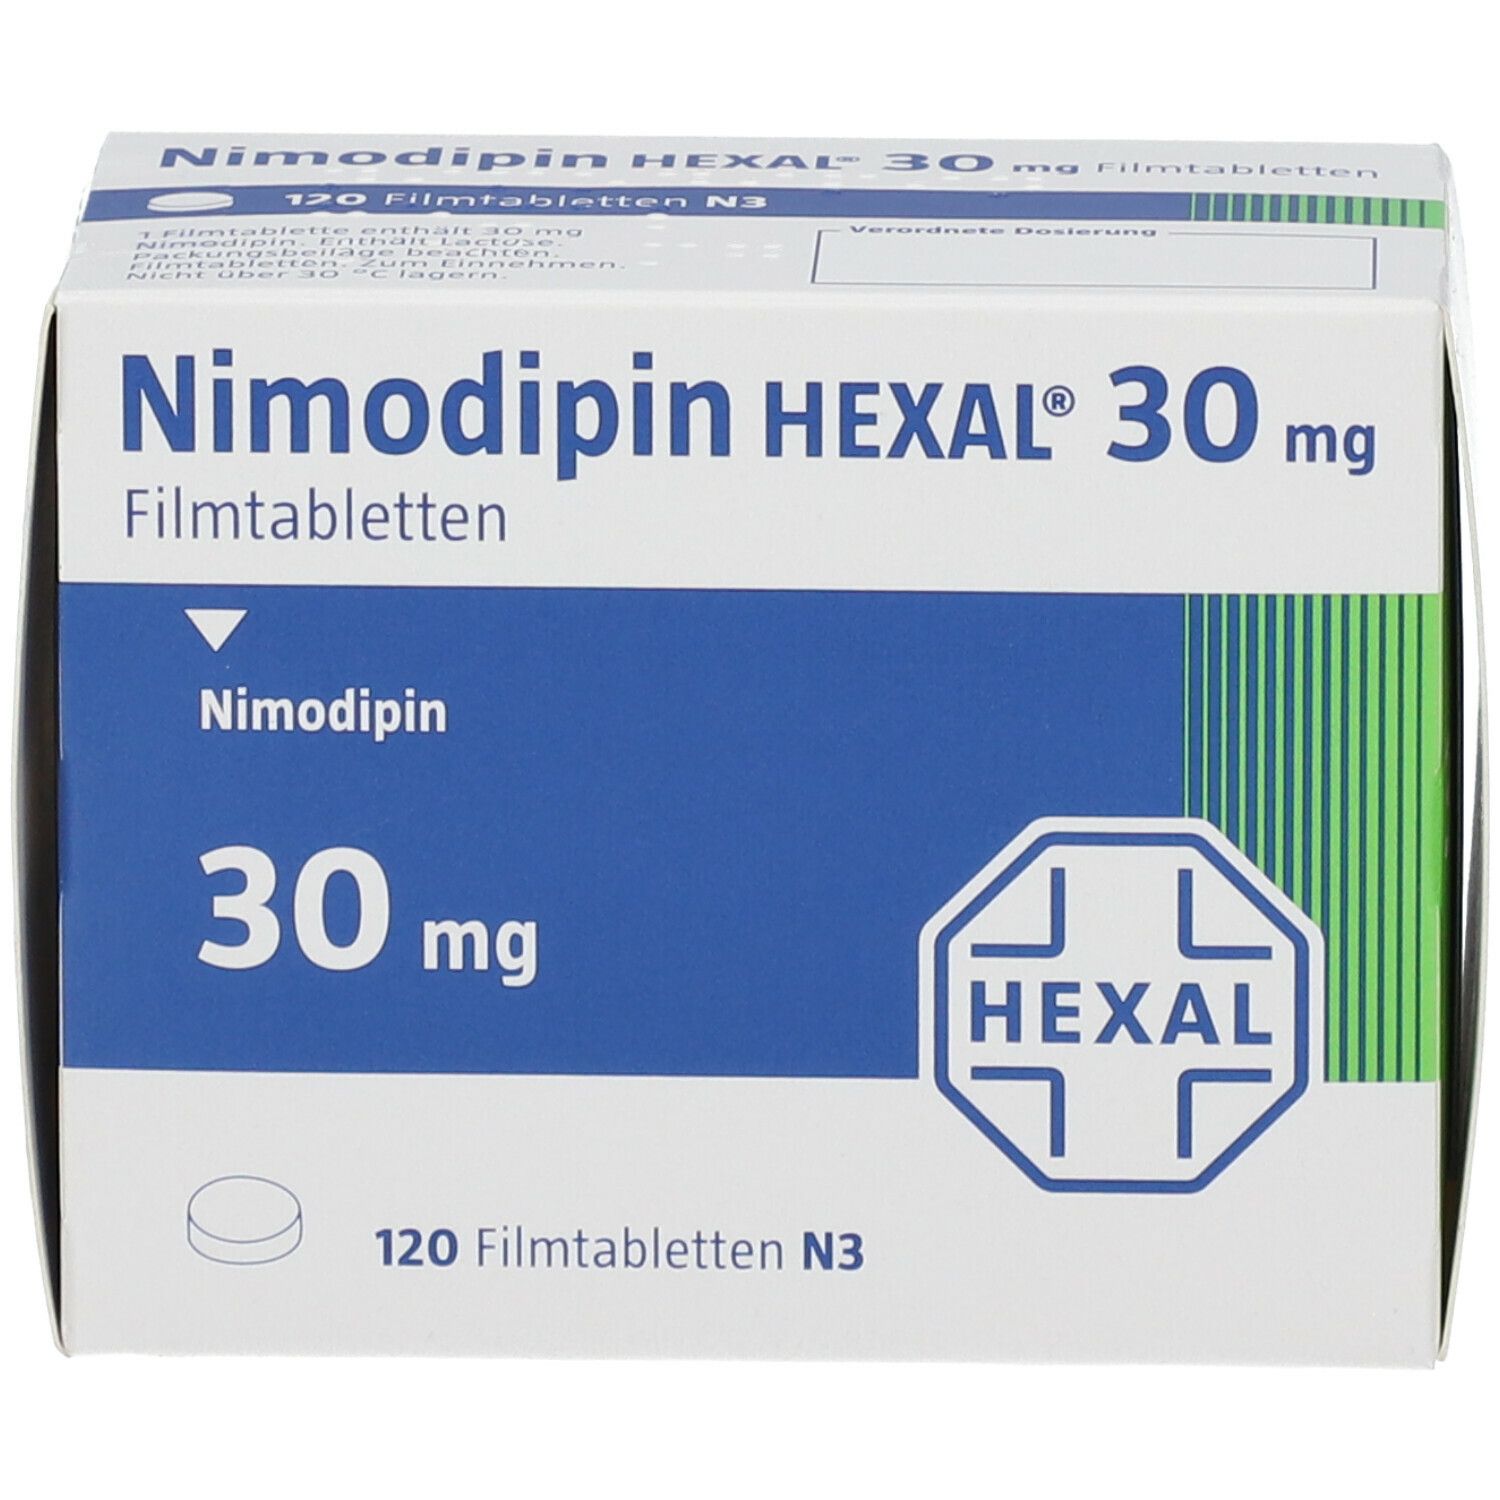 Nimodipin HEXAL® 30 mg